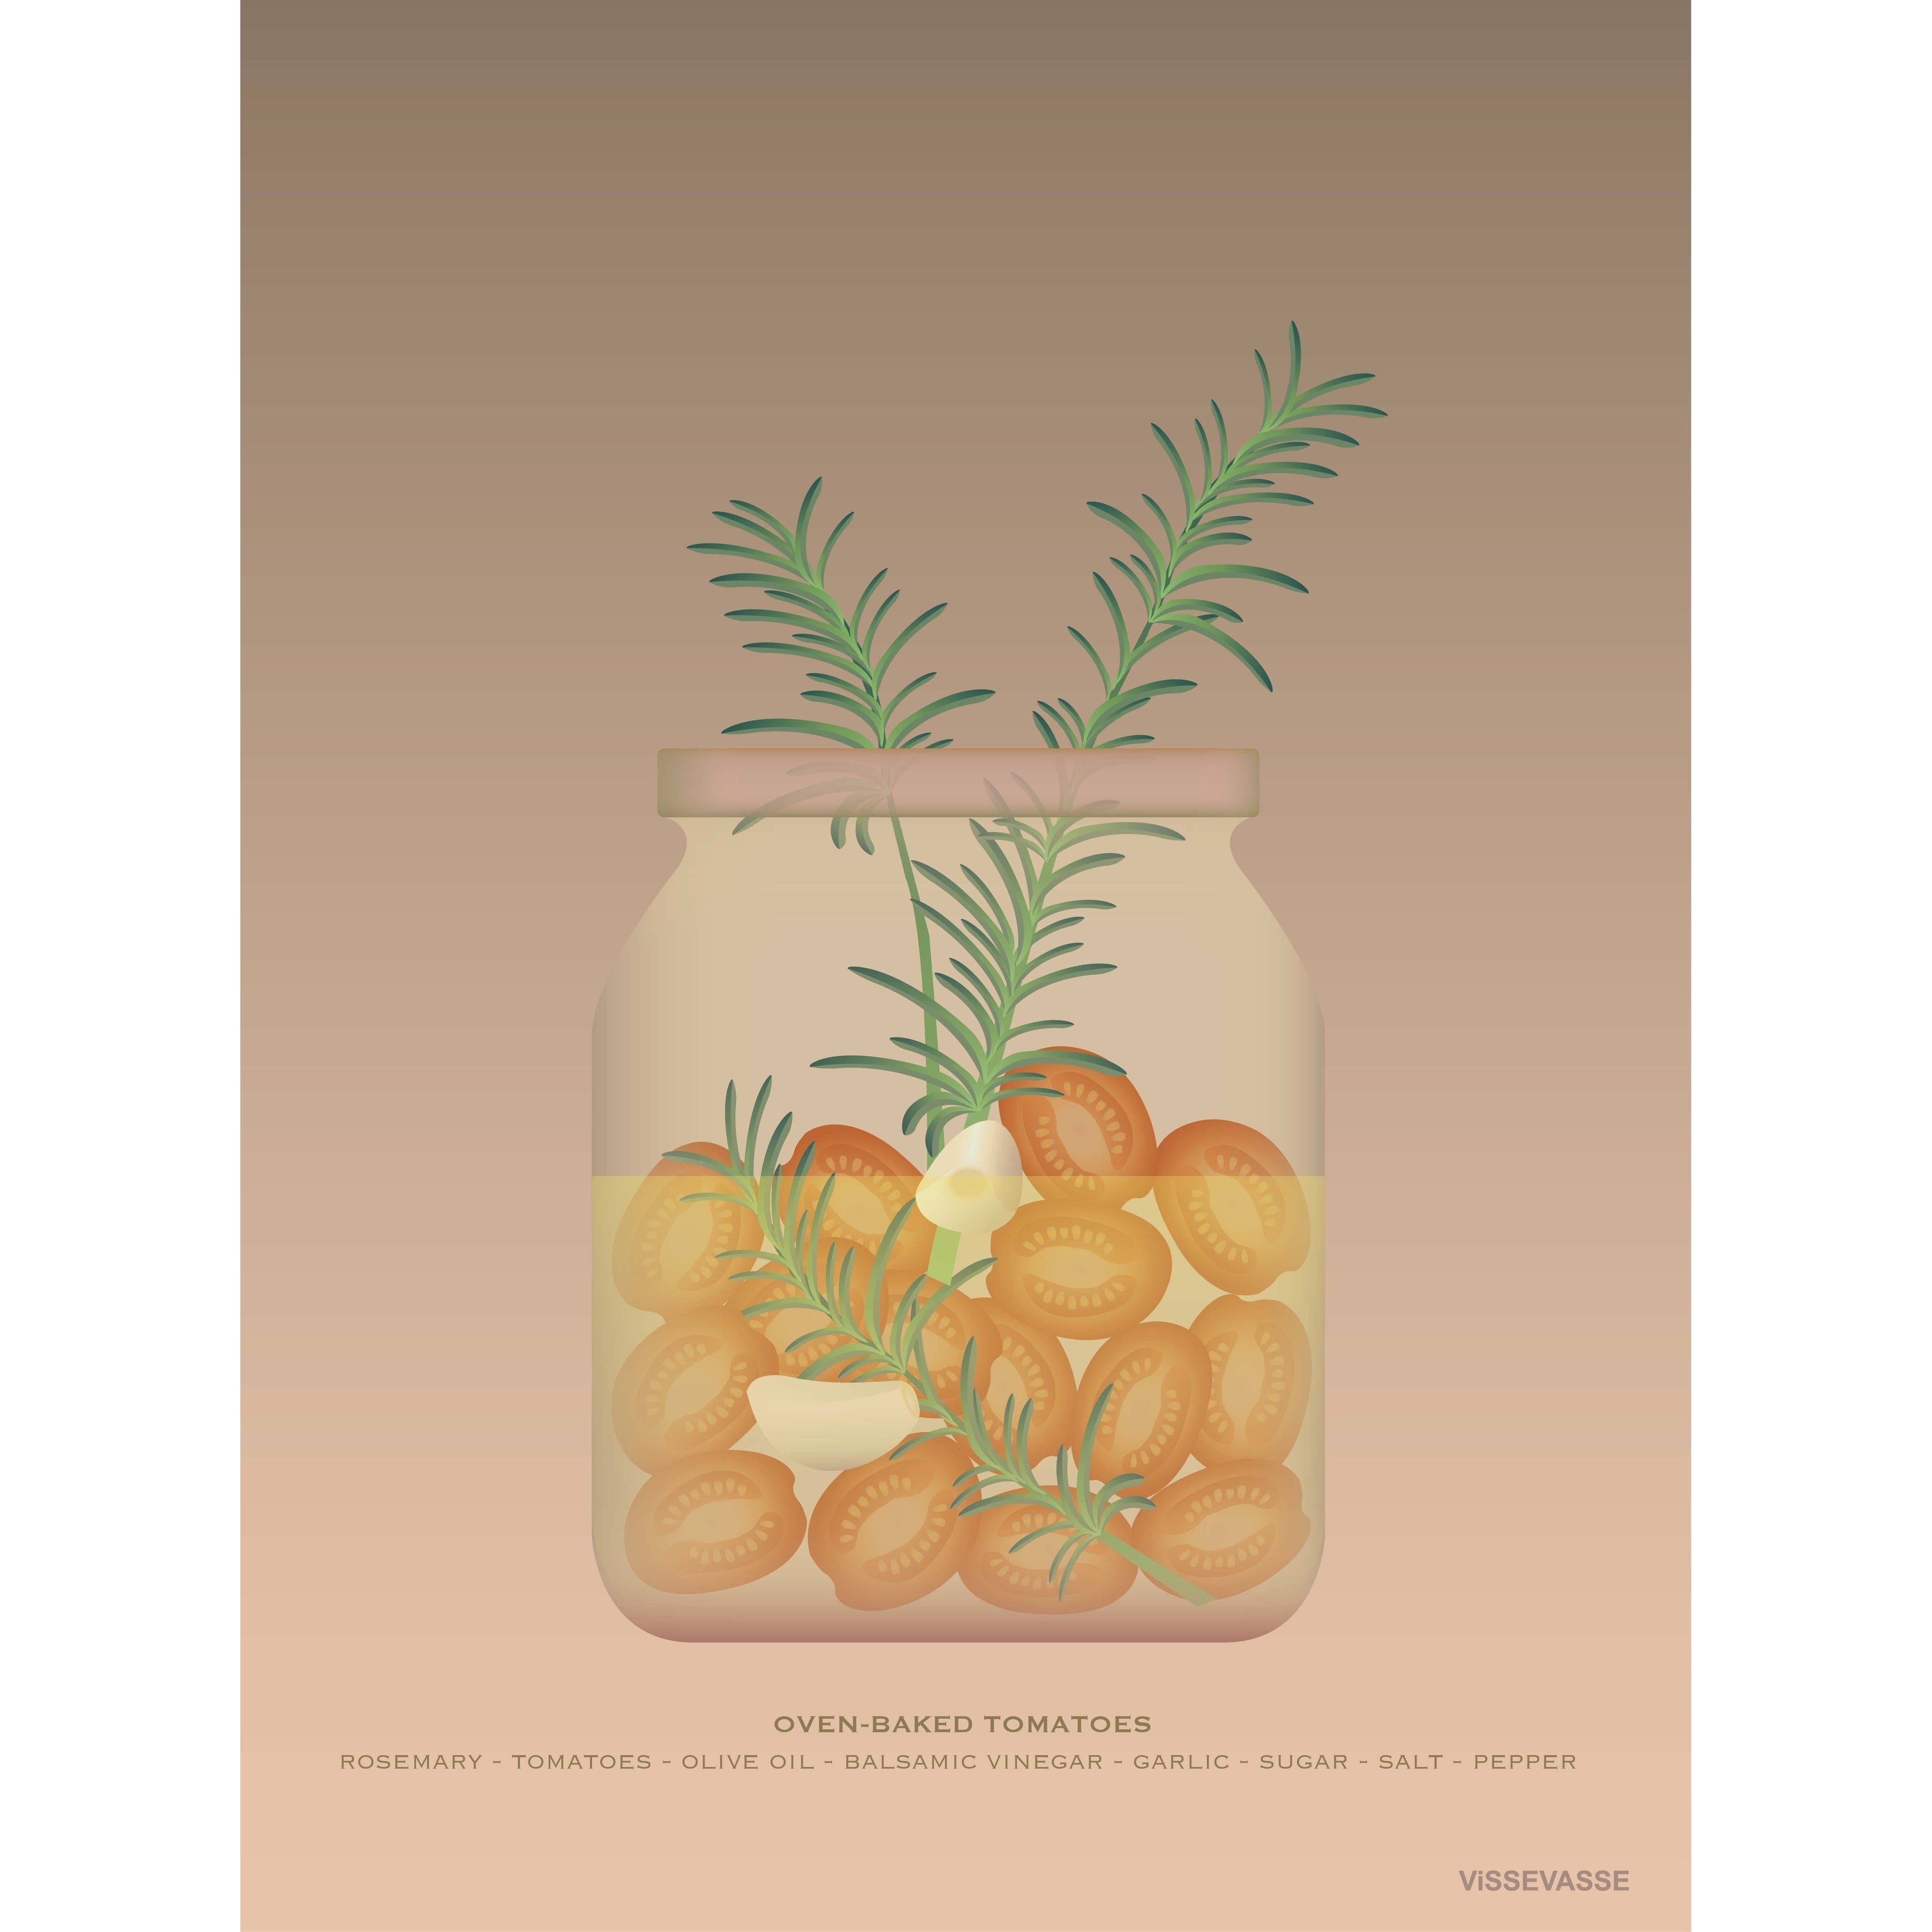 Vissevasse Oven-Baked Tomatoes Plakat, 15X21 Cm